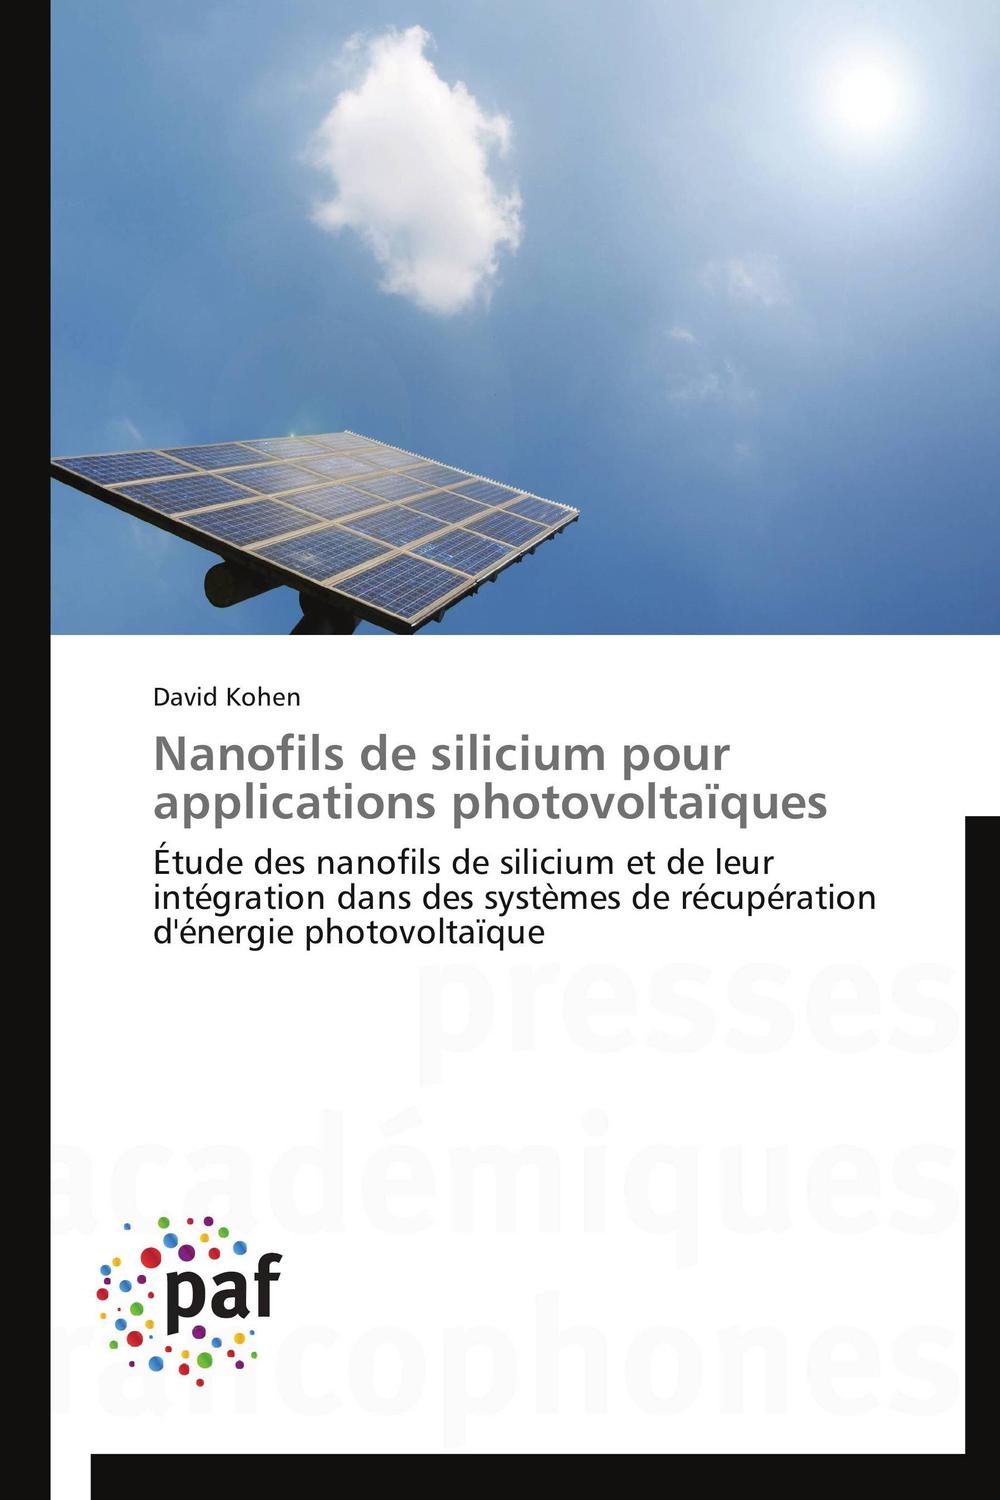 Nanofils de silicium pour applications photovoltaïques - David Kohen